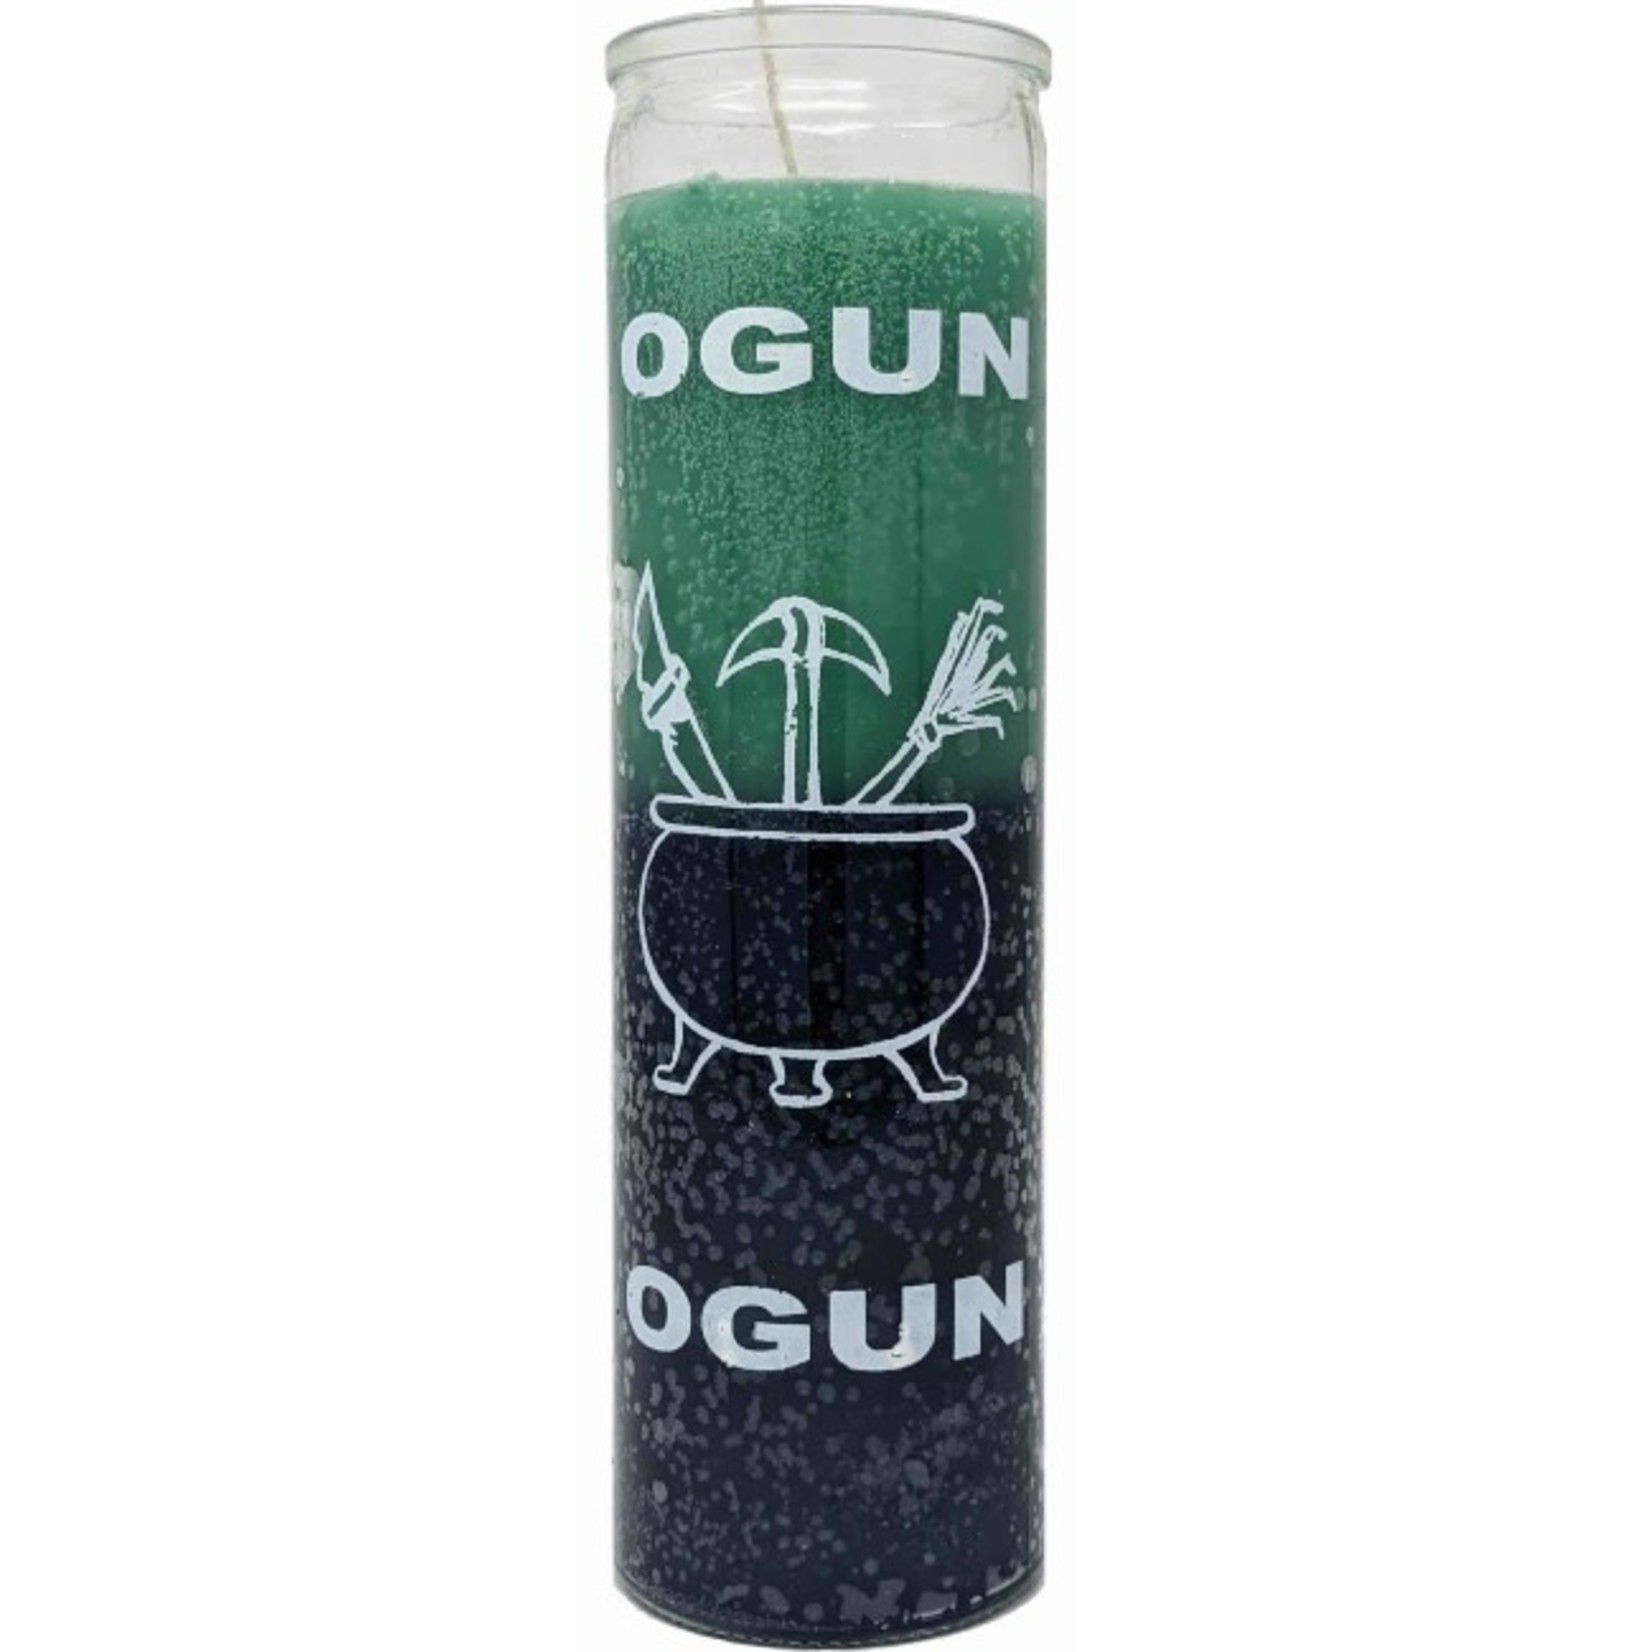 Orisha-Ogun 7 Day Candle, Green/Black